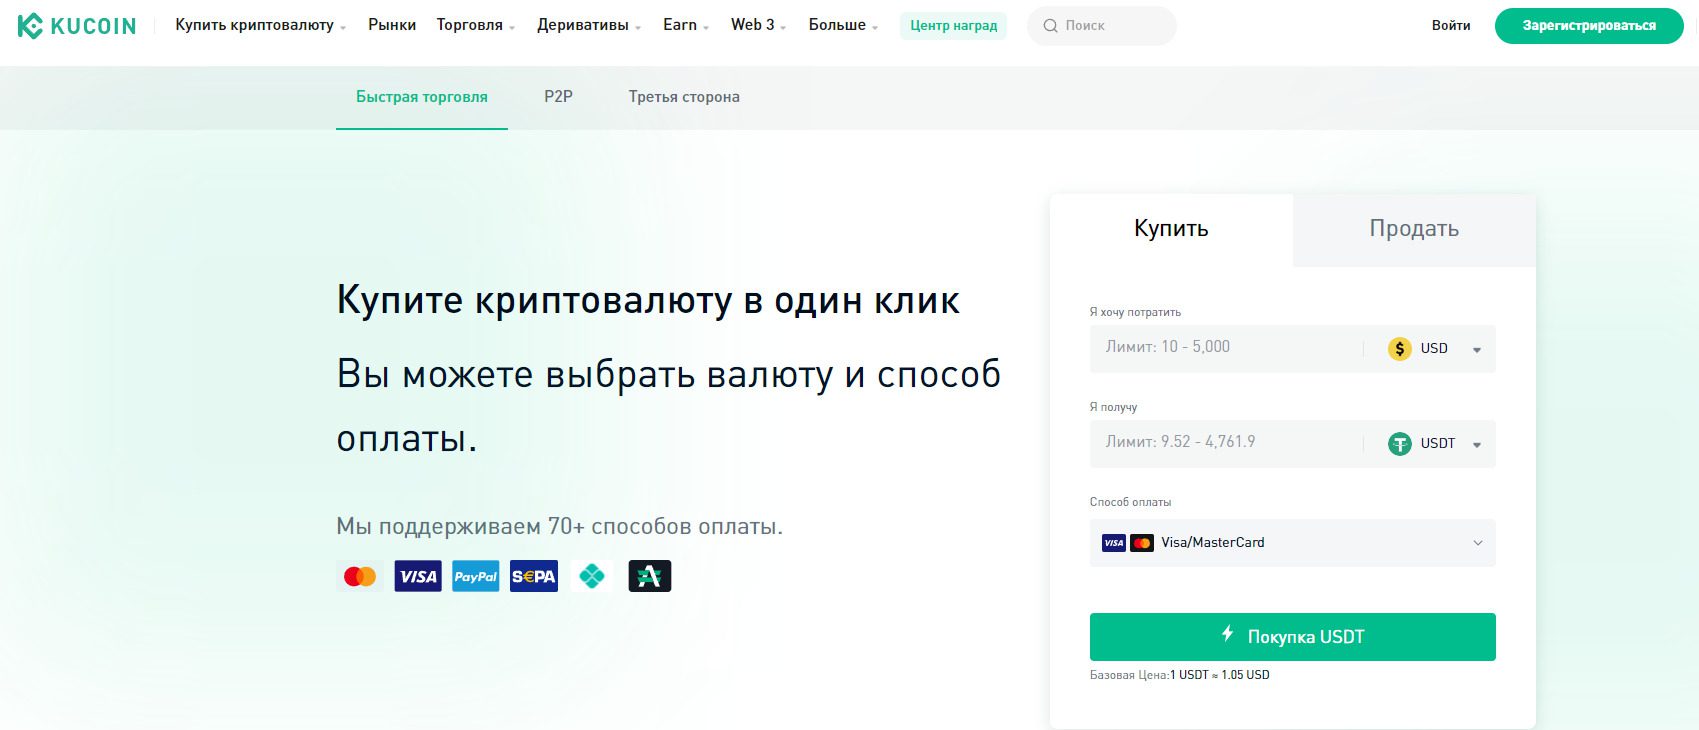 Сайт Международной платформы Kucoin